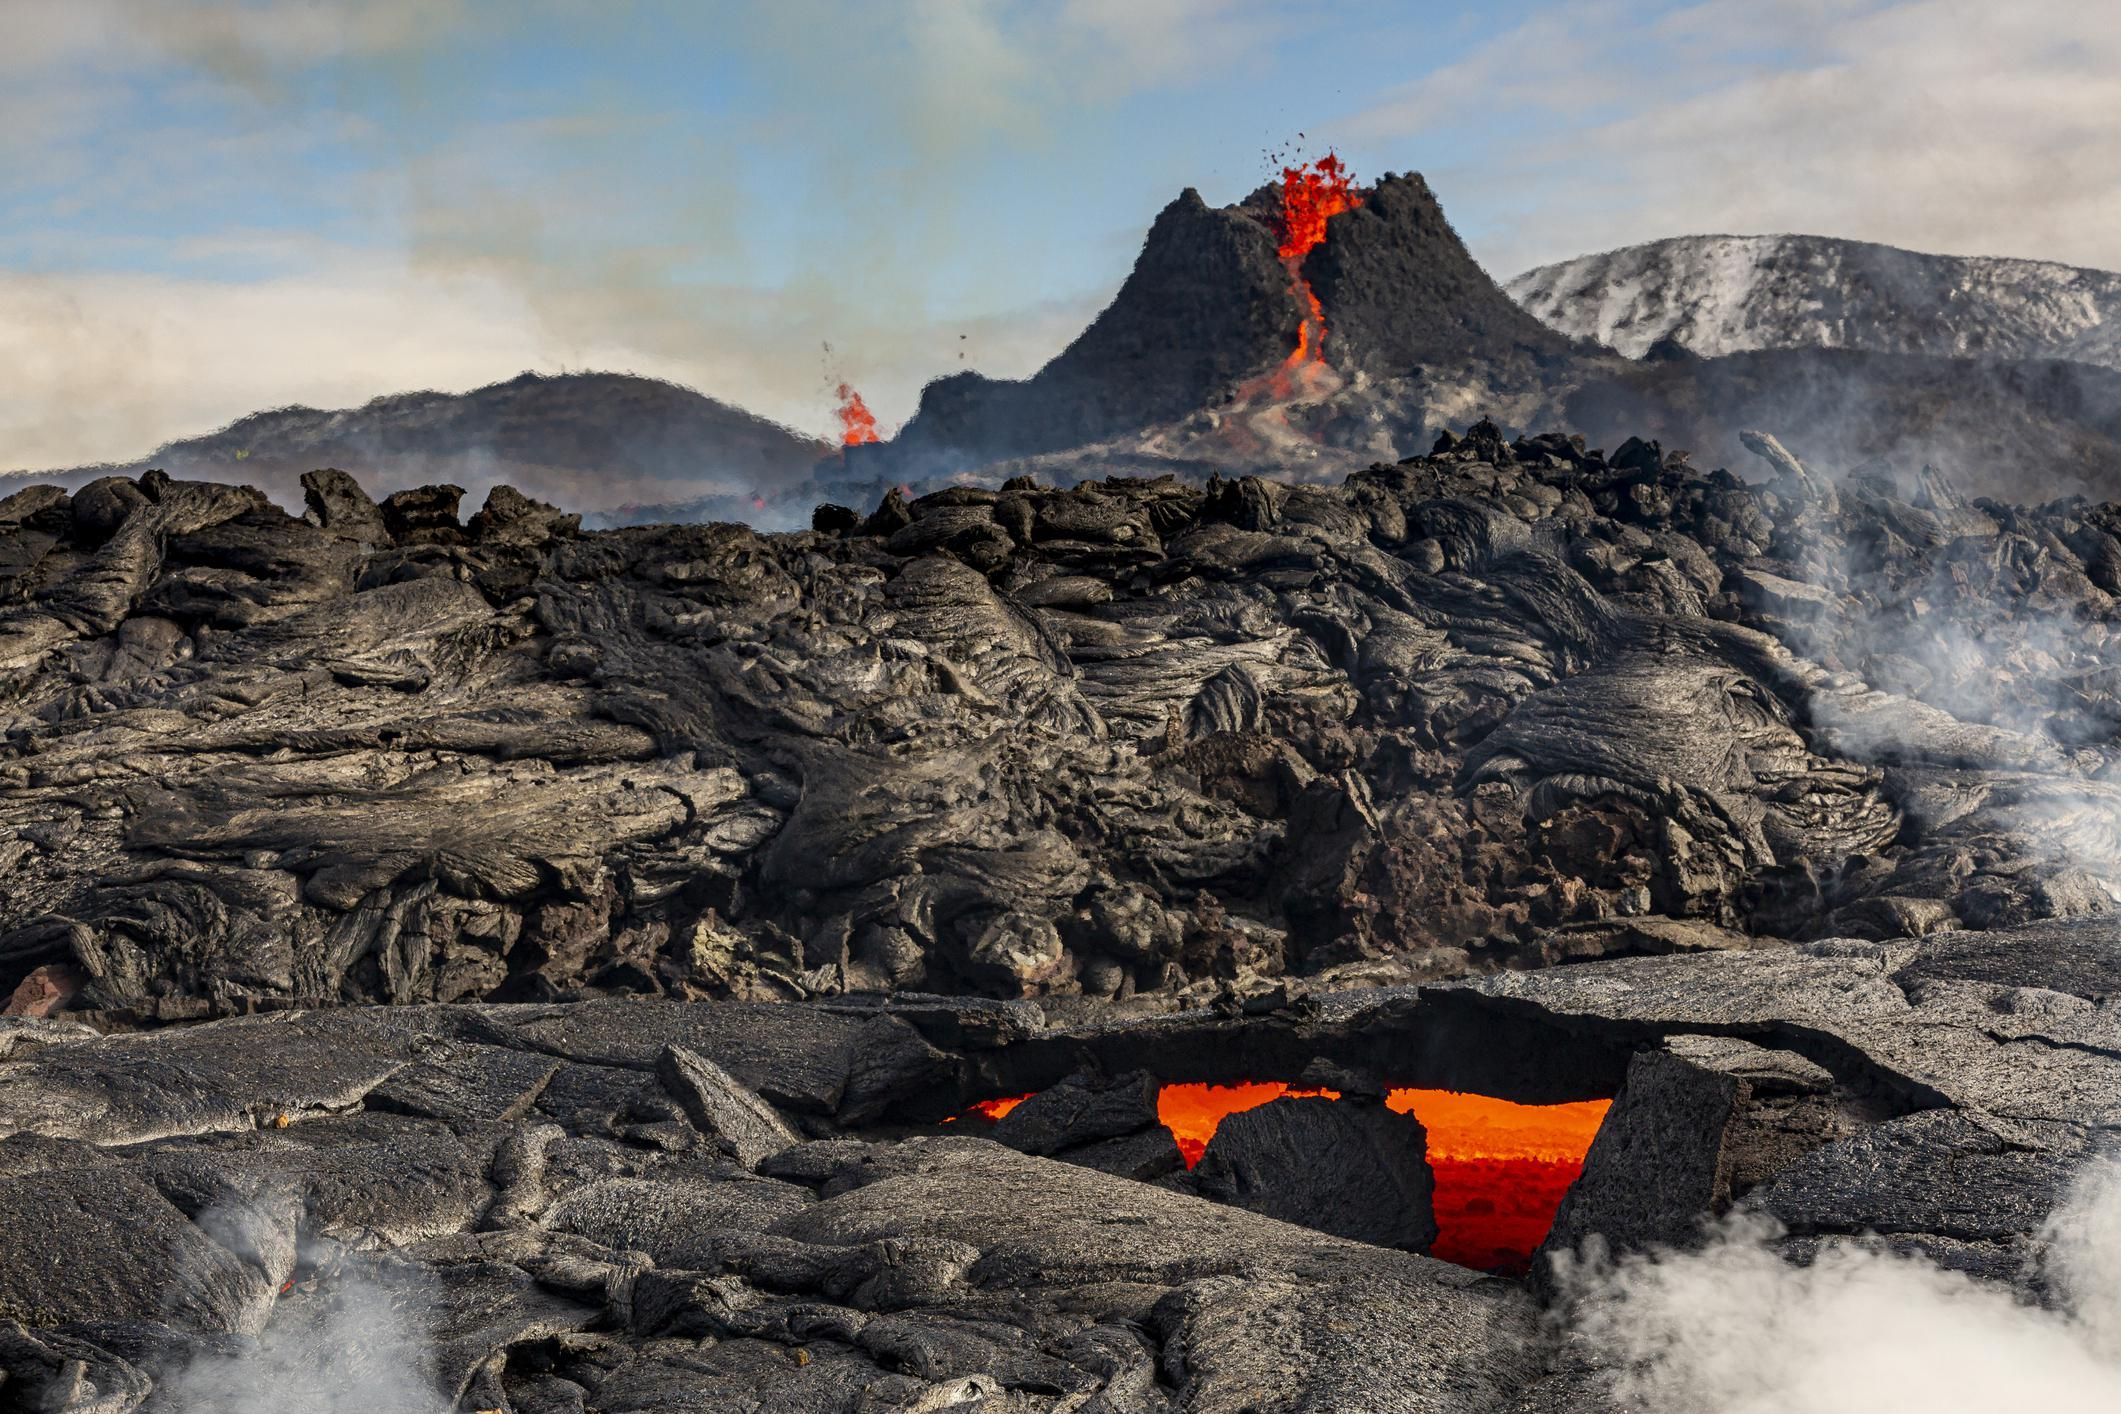 Izlandi vulkánkitörés és láva